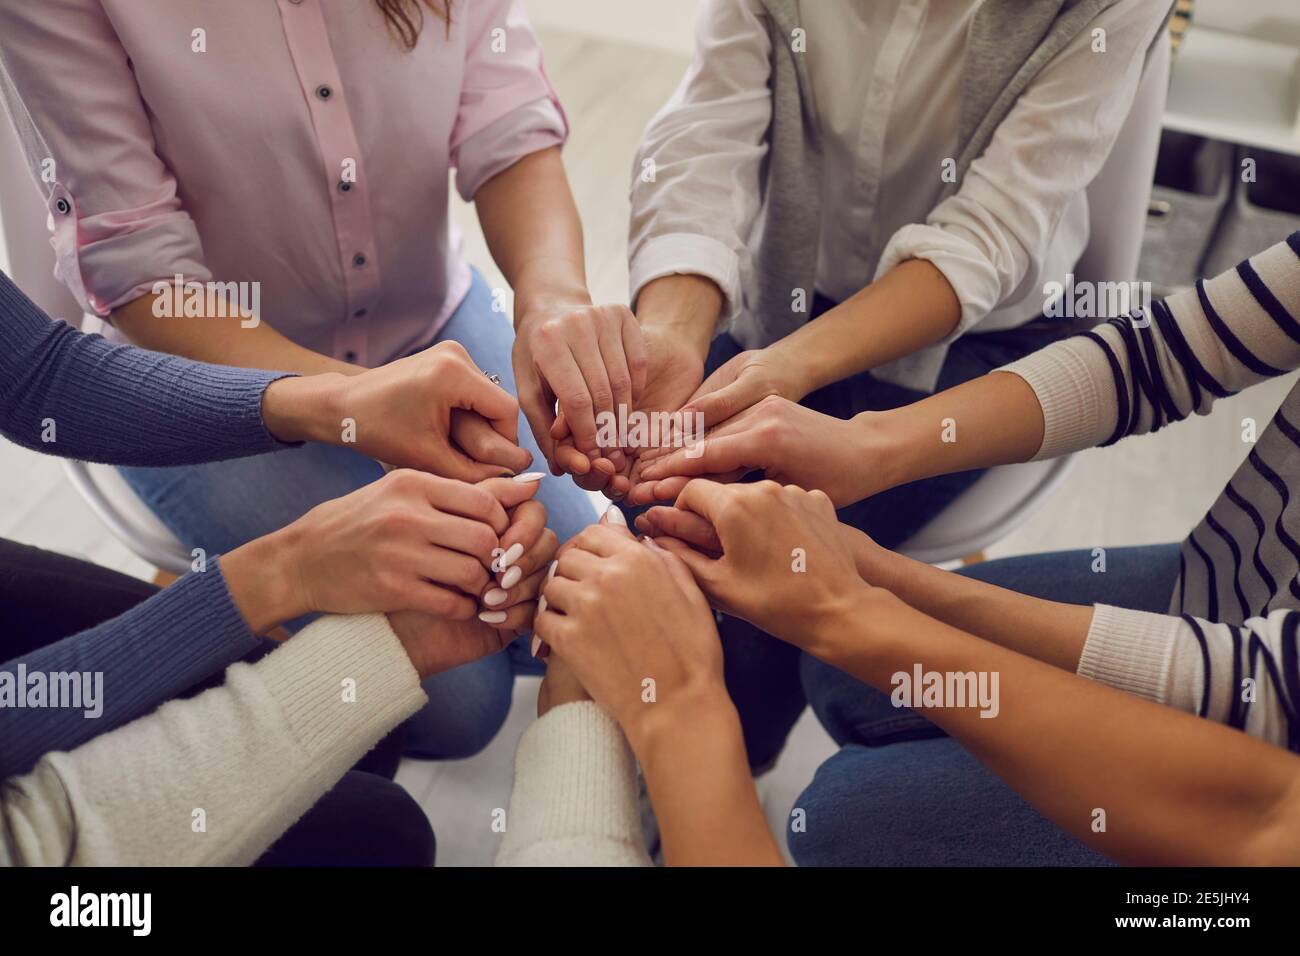 Eine Gruppe von Frauen, die zusammen sitzen und die Hände halten, um Unterstützung und Solidarität zu demonstrieren Stockfoto